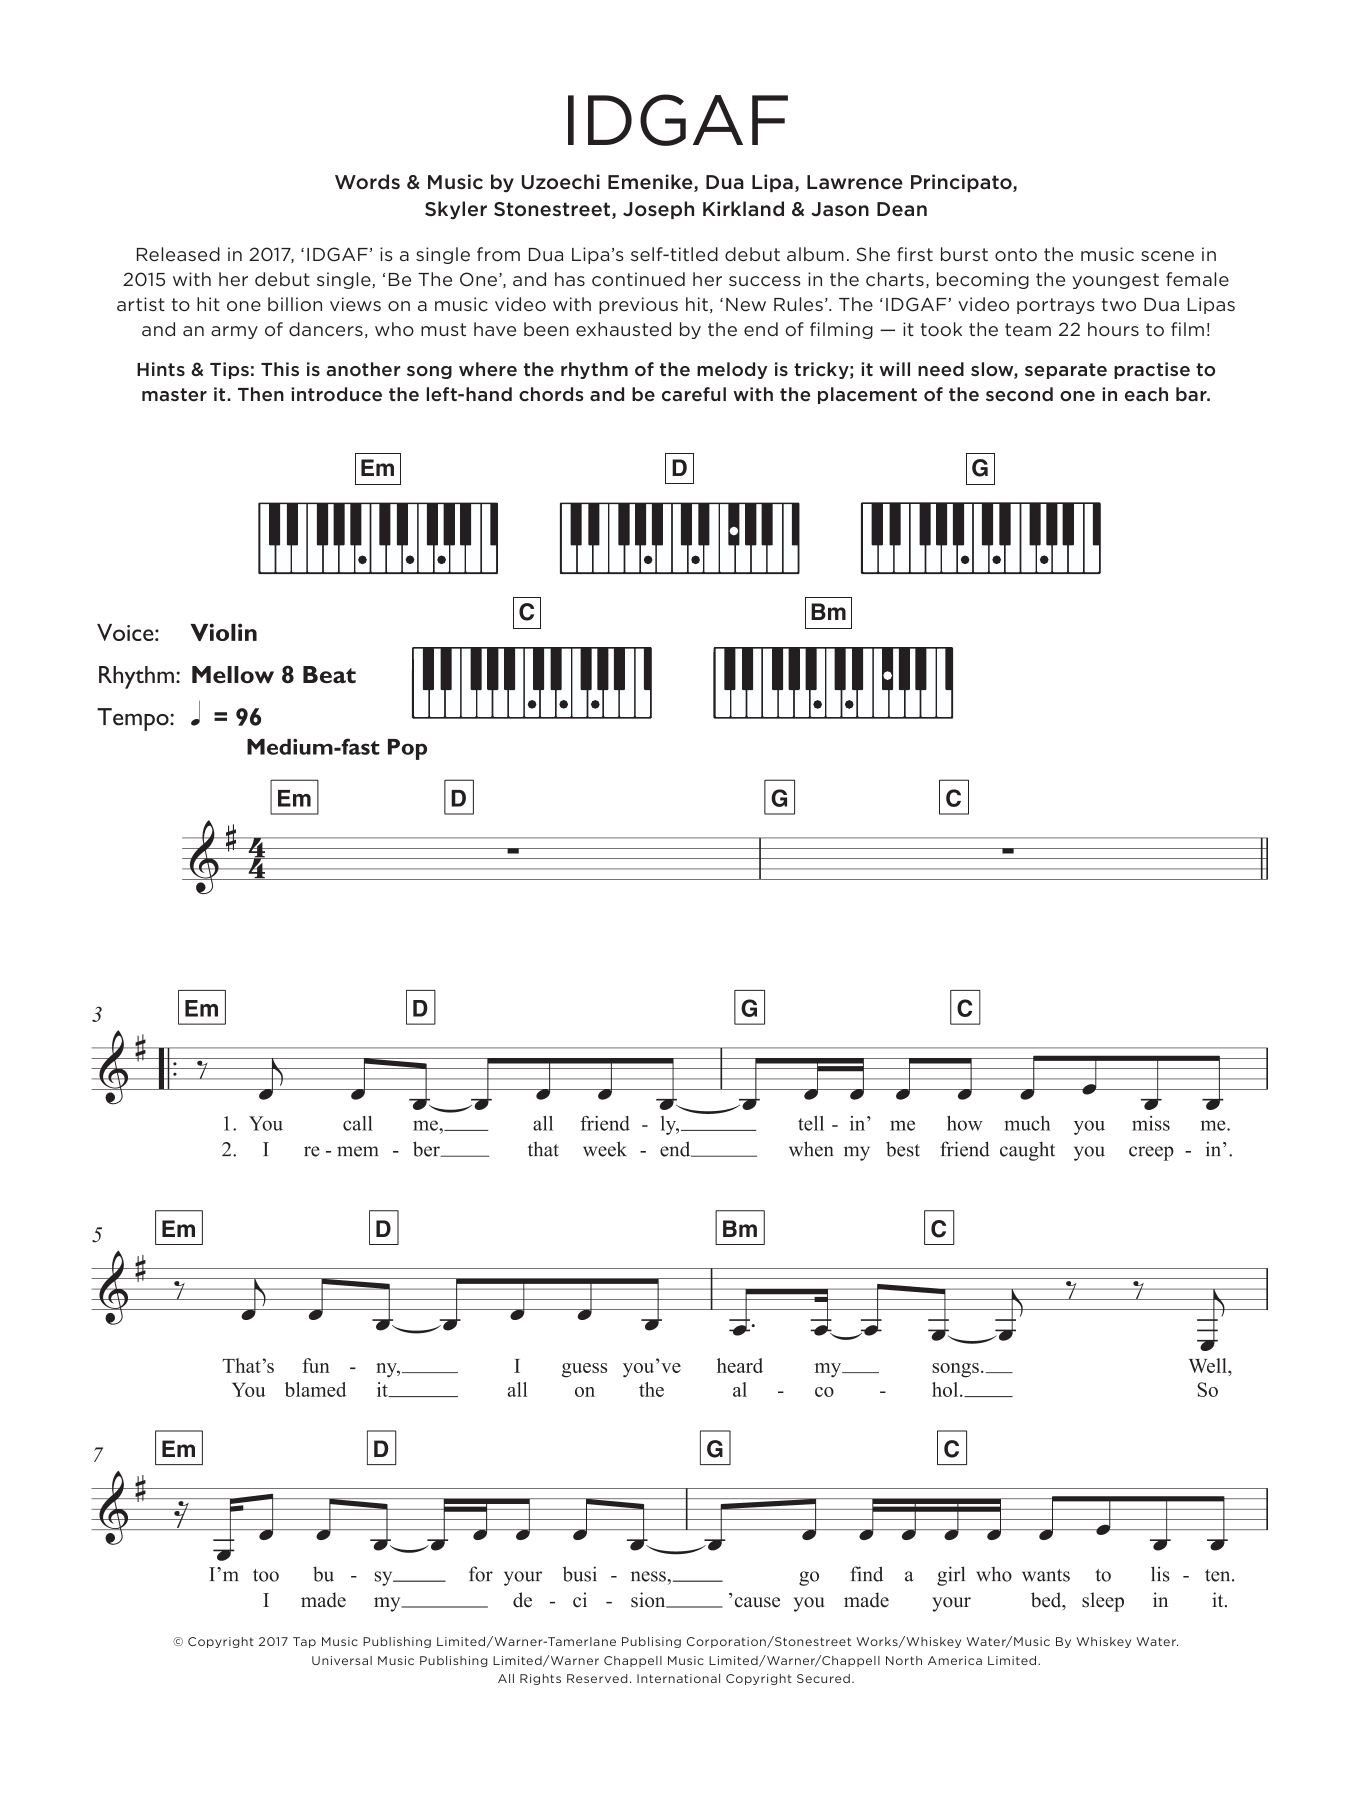 Dua Lipa IDGAF Sheet Music Notes & Chords for Keyboard - Download or Print PDF